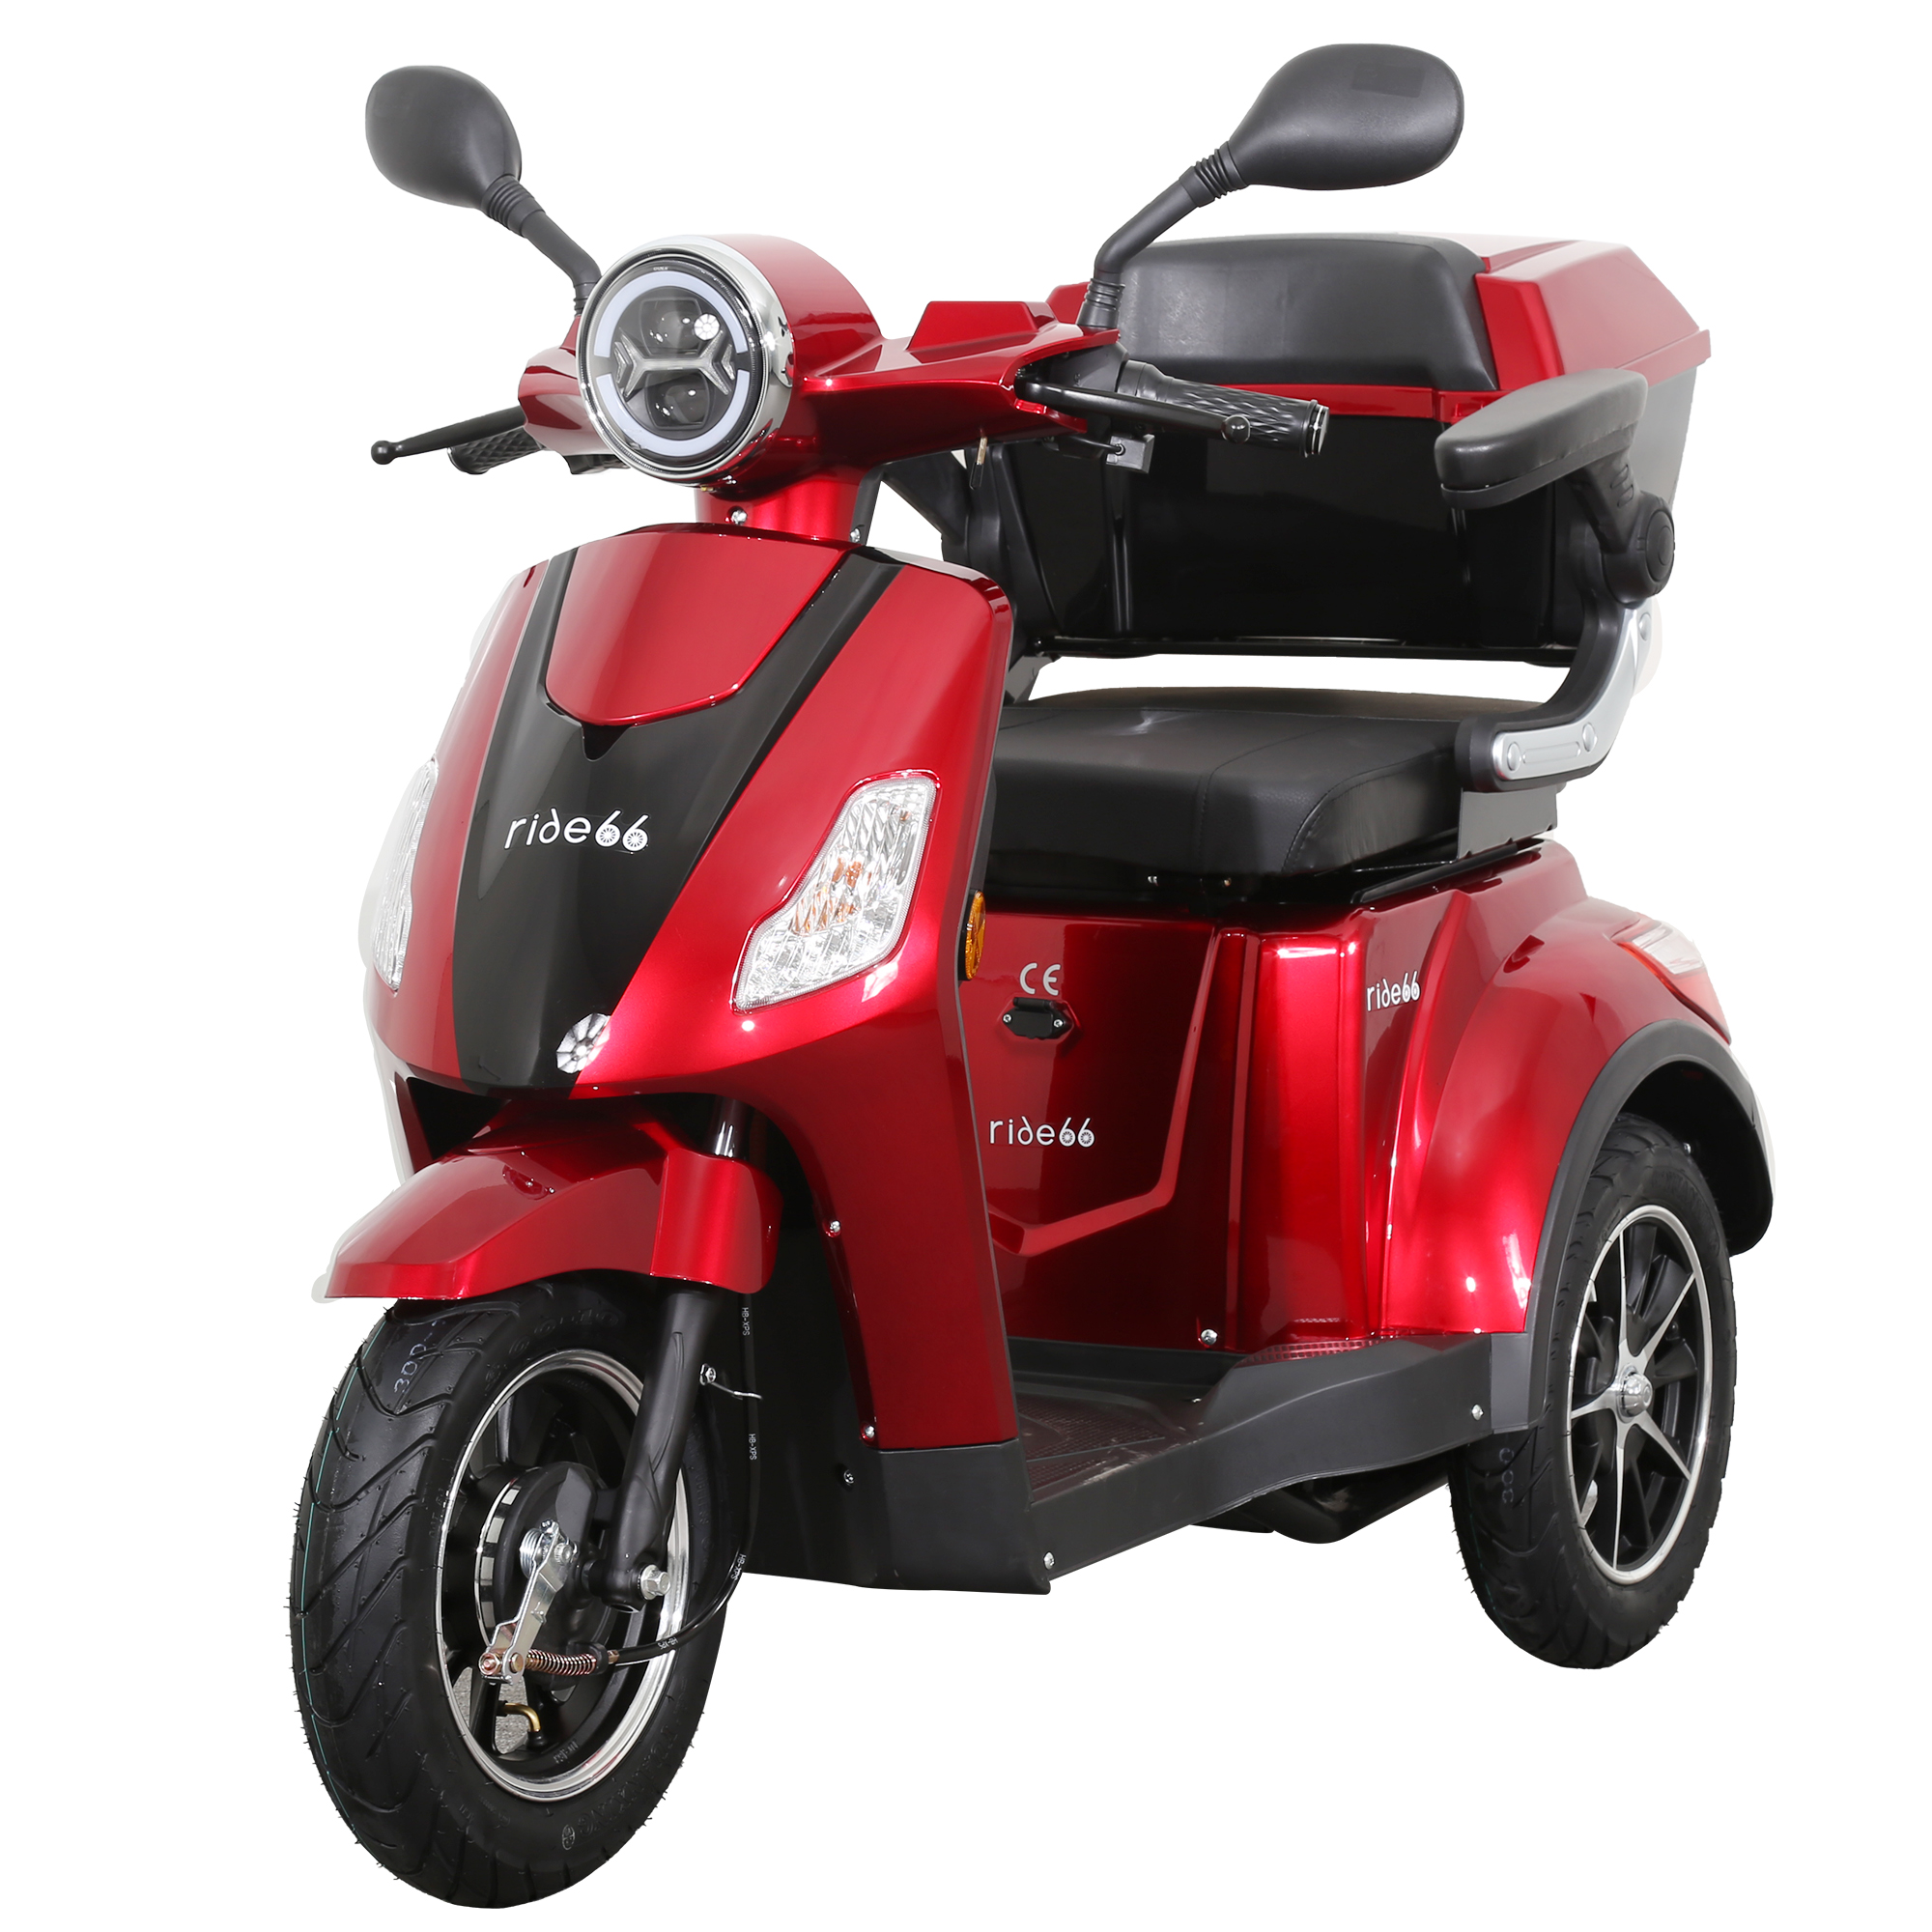 https://www.ride66.com/image/catalog/ebike/scooter3wheel/red/IMG_9296.jpg